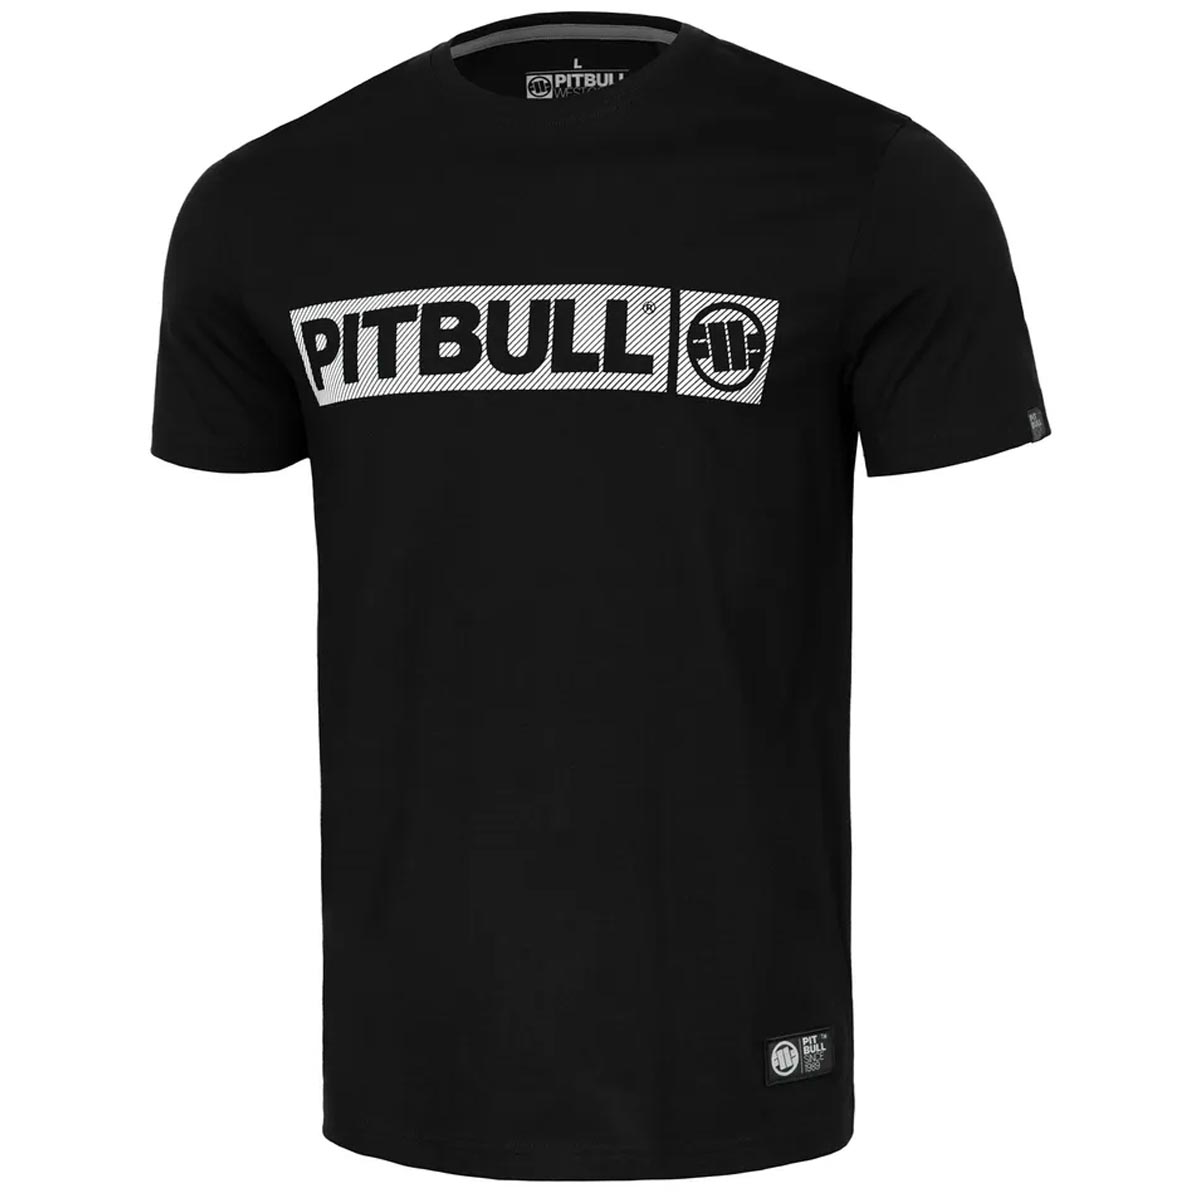 Pit Bull West Coast T-Shirt, Ultra Light Hilltop, schwarz, XXL